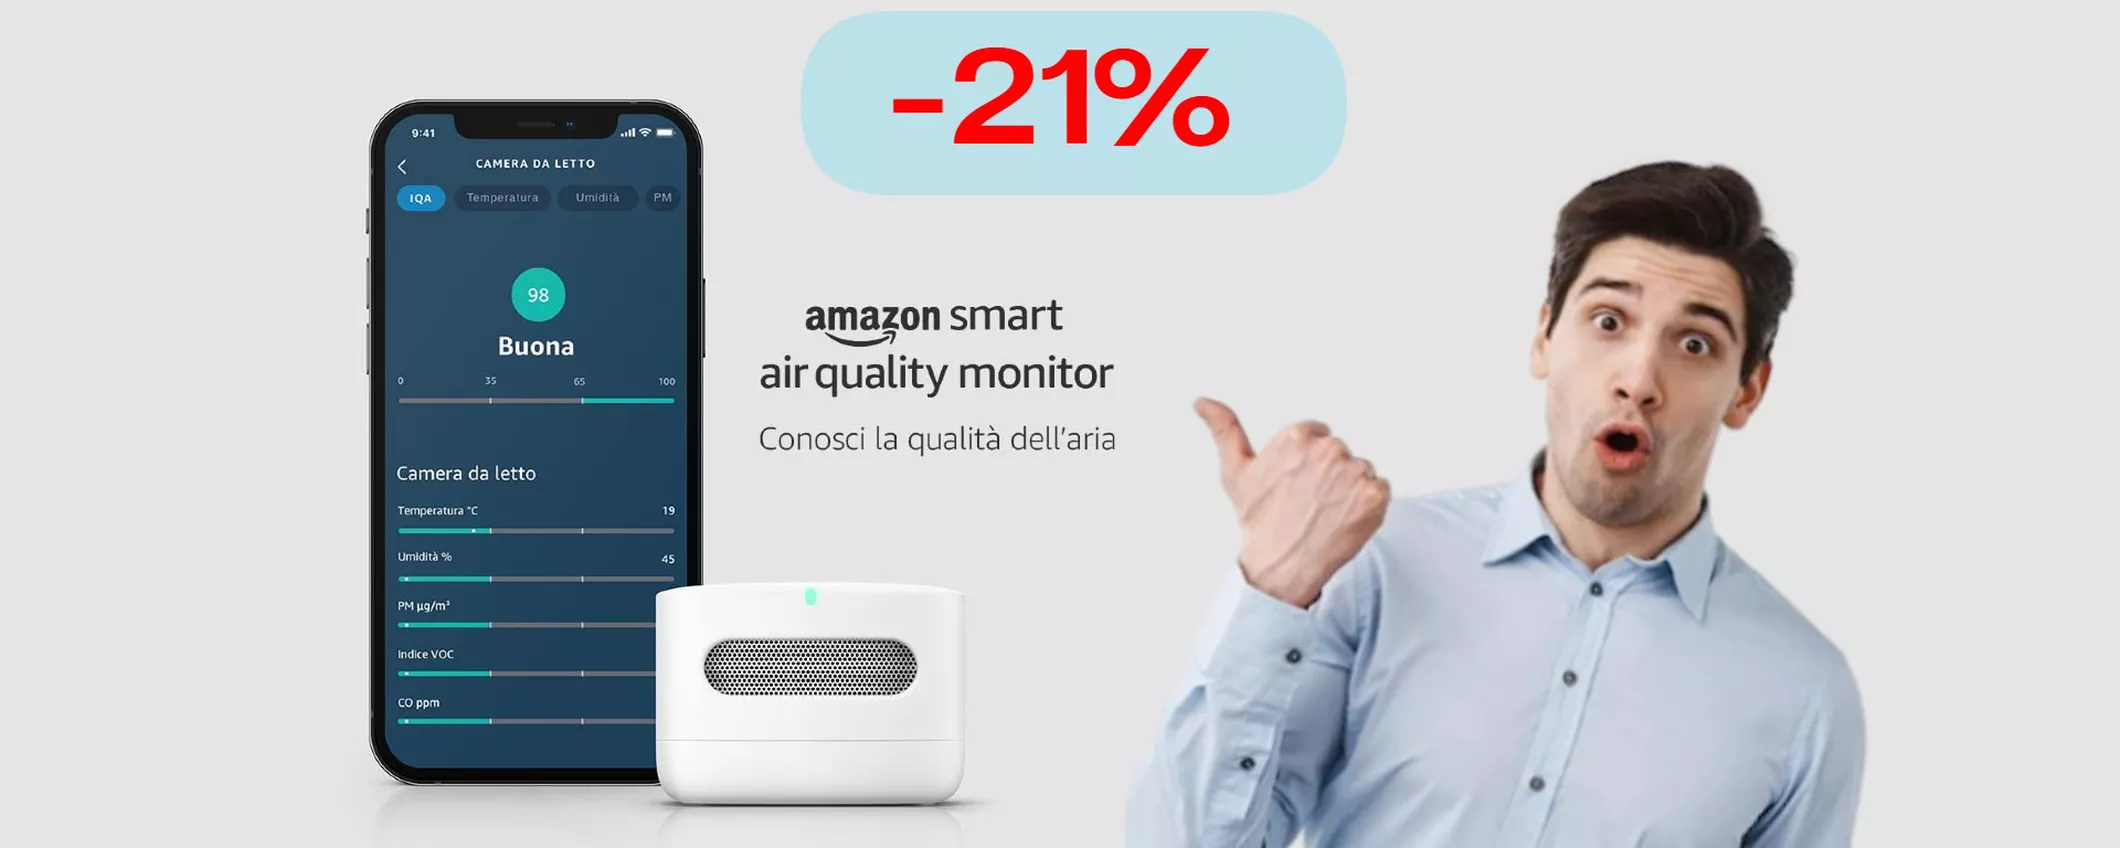 Grazie ad Amazon, la qualità dell'aria che respiri è a portata di iPhone (-21%)